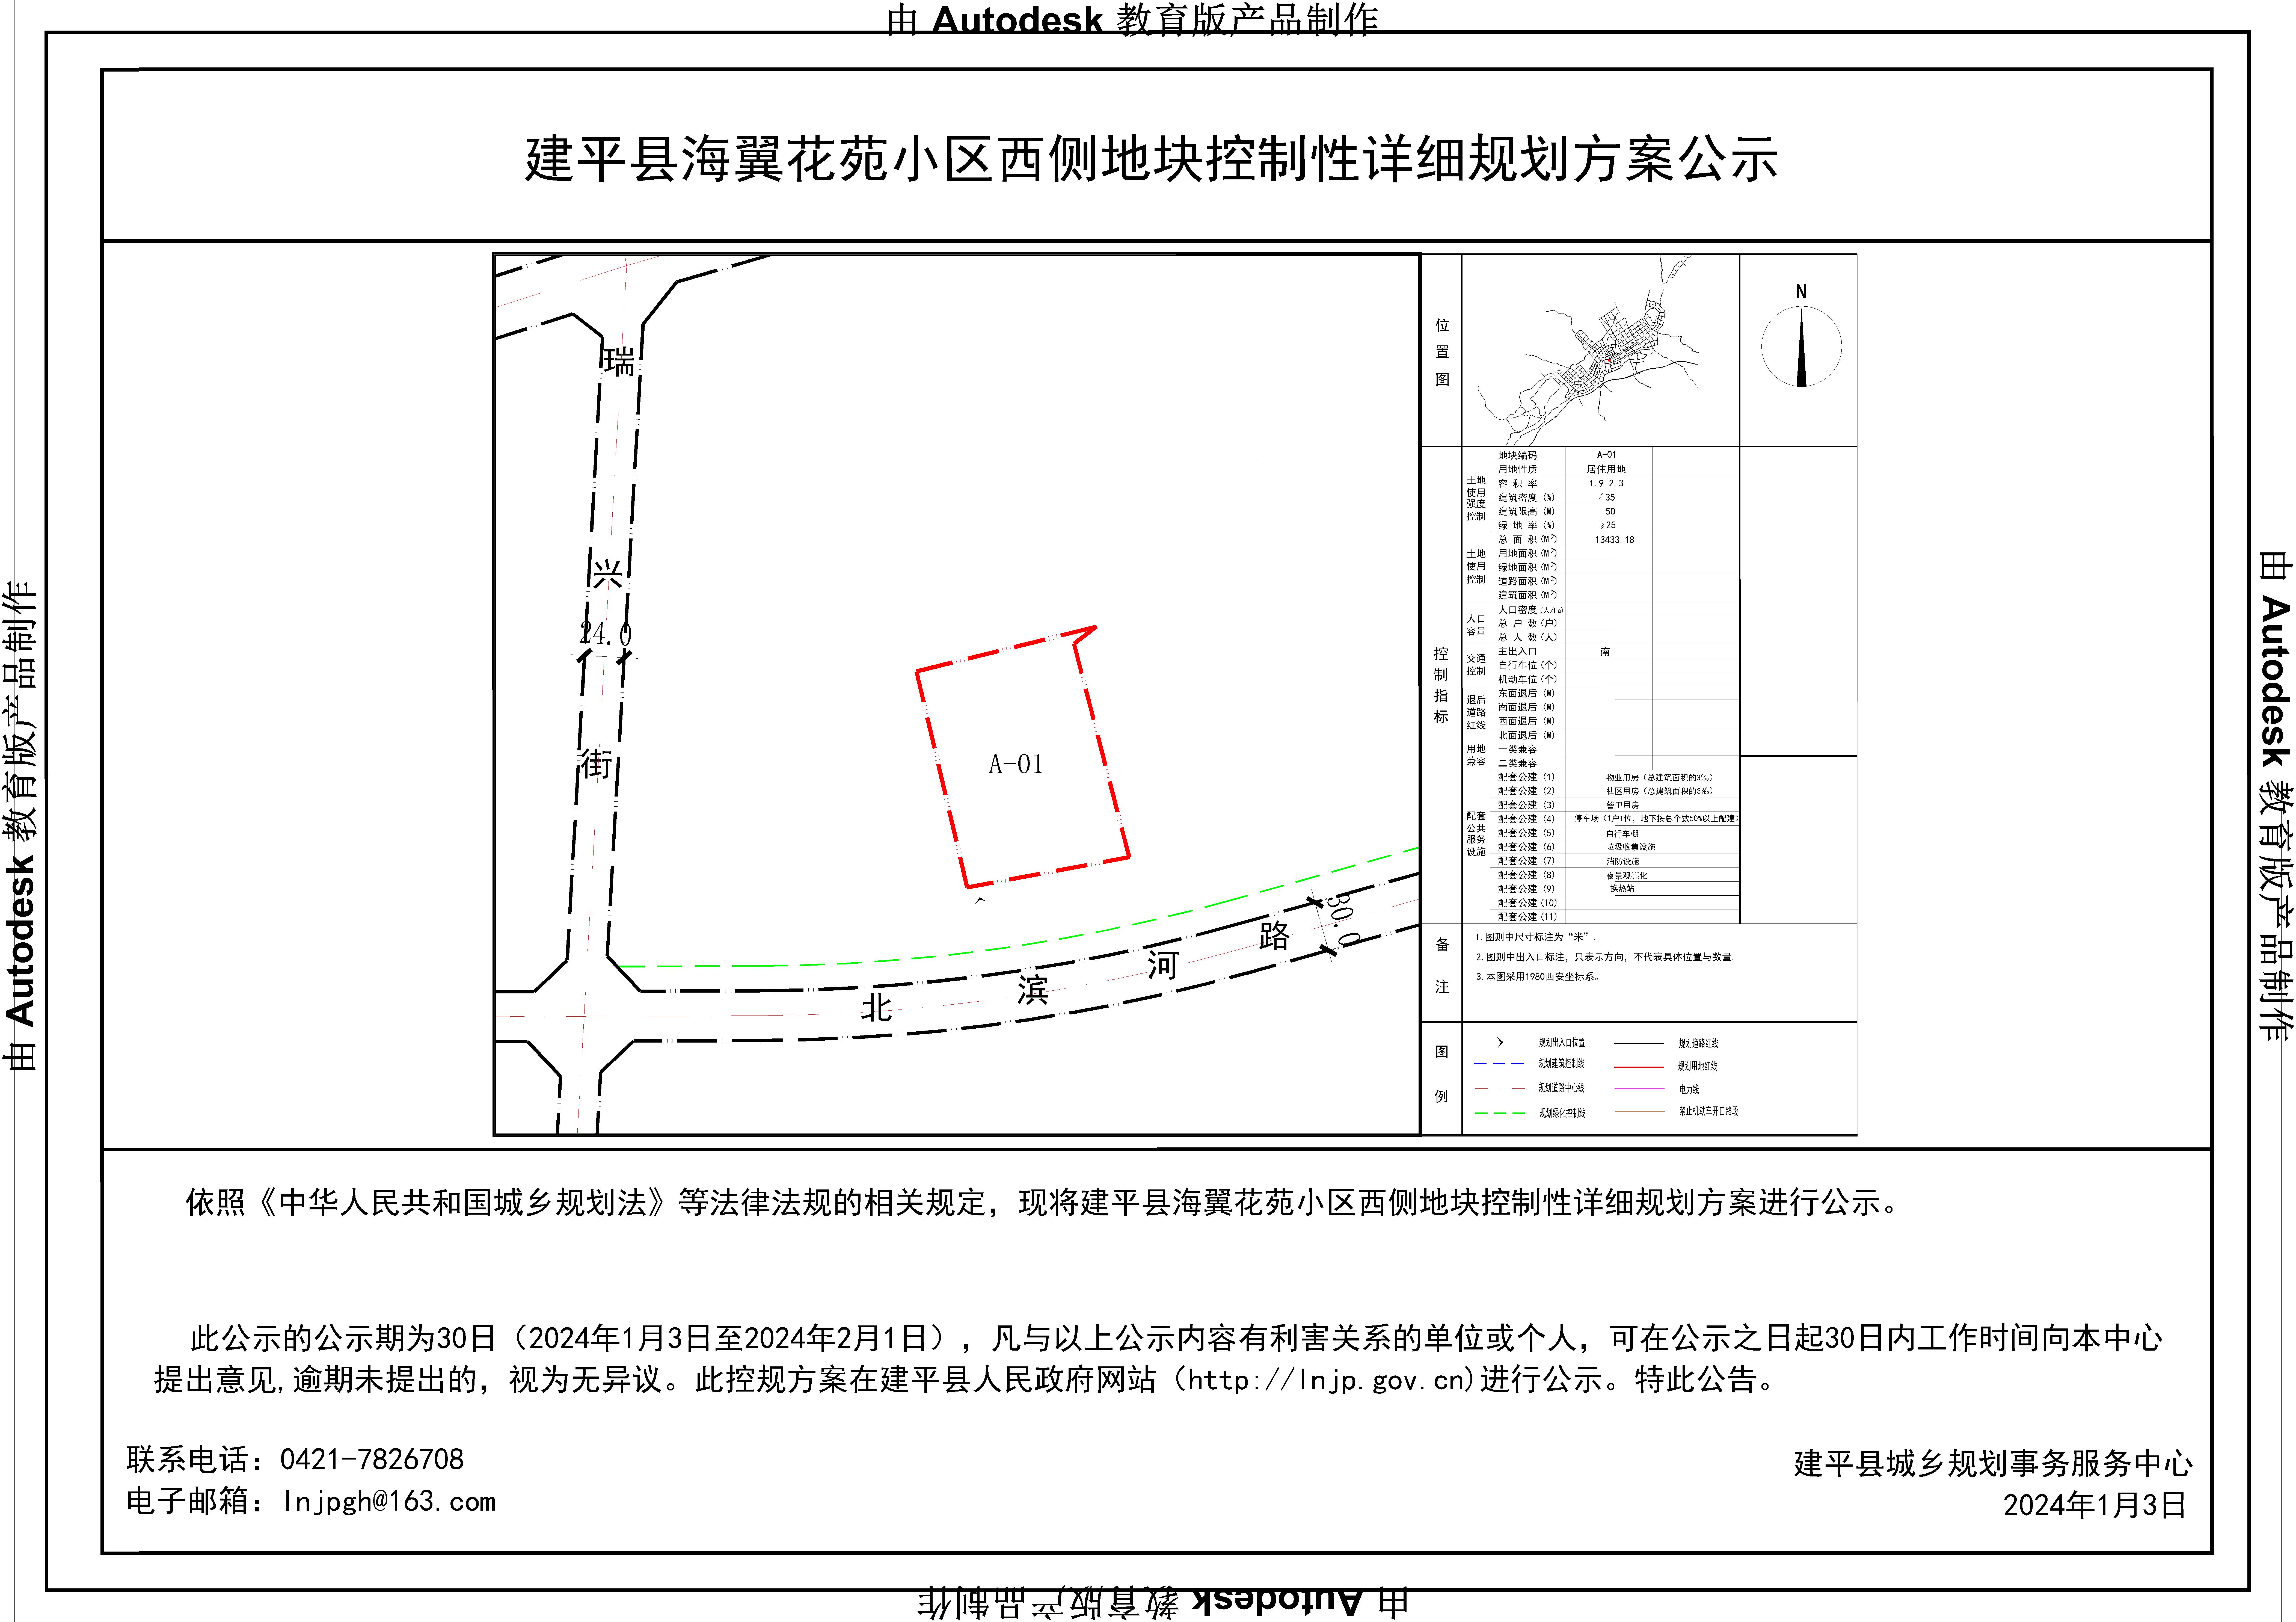 建平县海翼花苑小区西侧地块控制性详细规划分图图则-Model.jpg